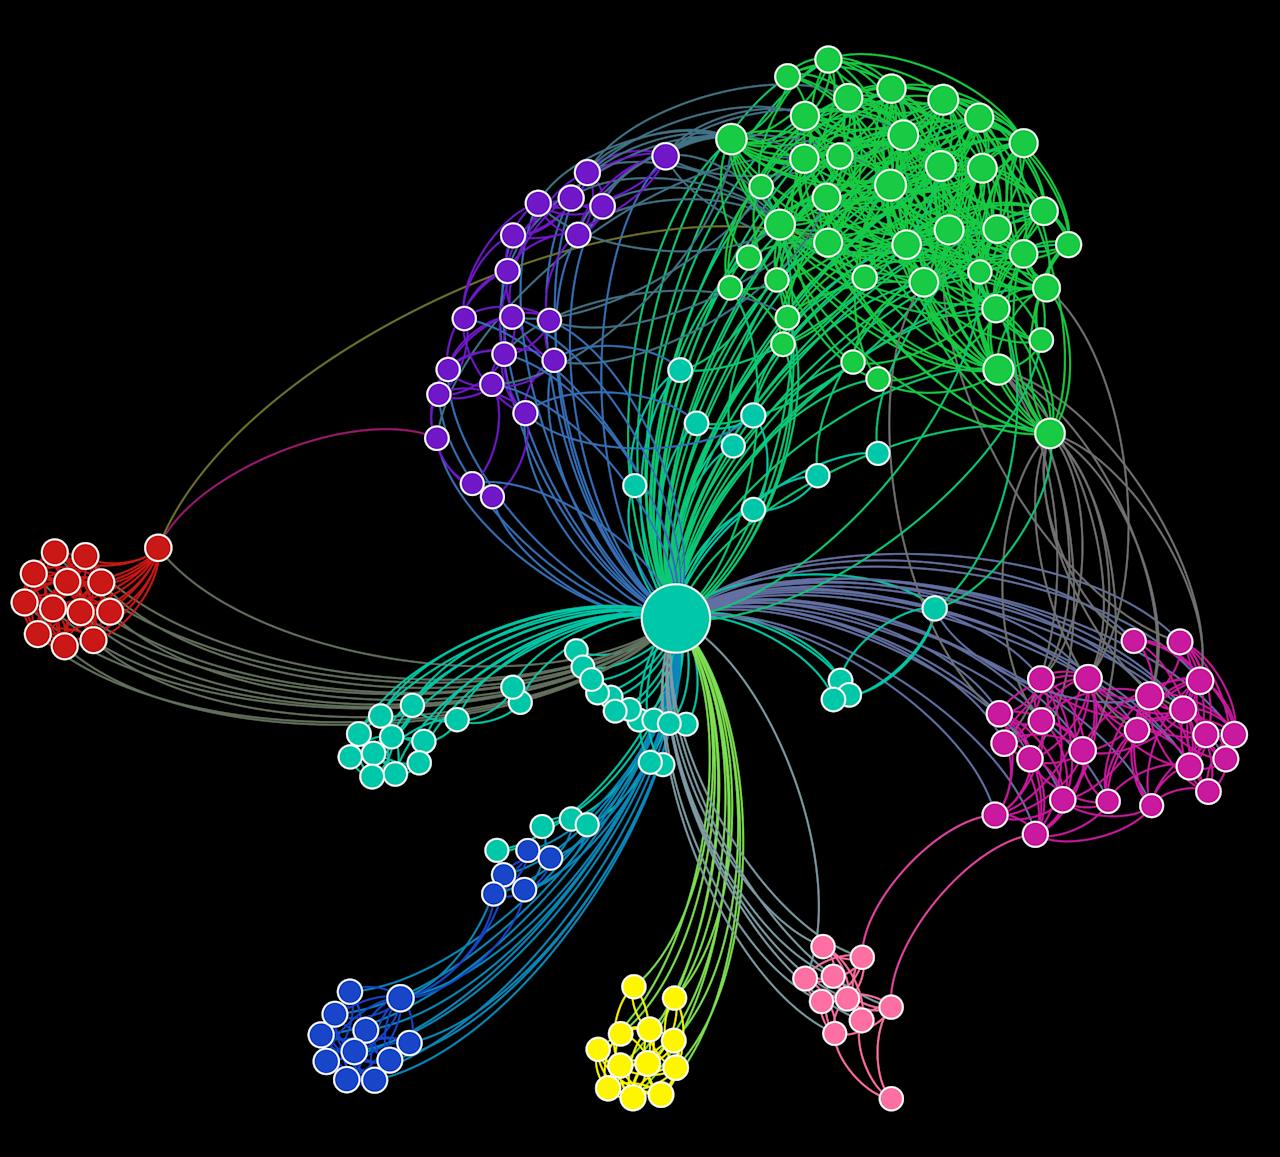 Schematische weergave van een geordend LinkedIn-netwerk. De grote stip in het midden visualiseert één persoon. Vanuit de grote stip lopen lijnen naar kleinere stippen: de connecties van die persoon. Deze connecties zijn in groepen verdeeld. Elke groep heeft een eigen kleur.